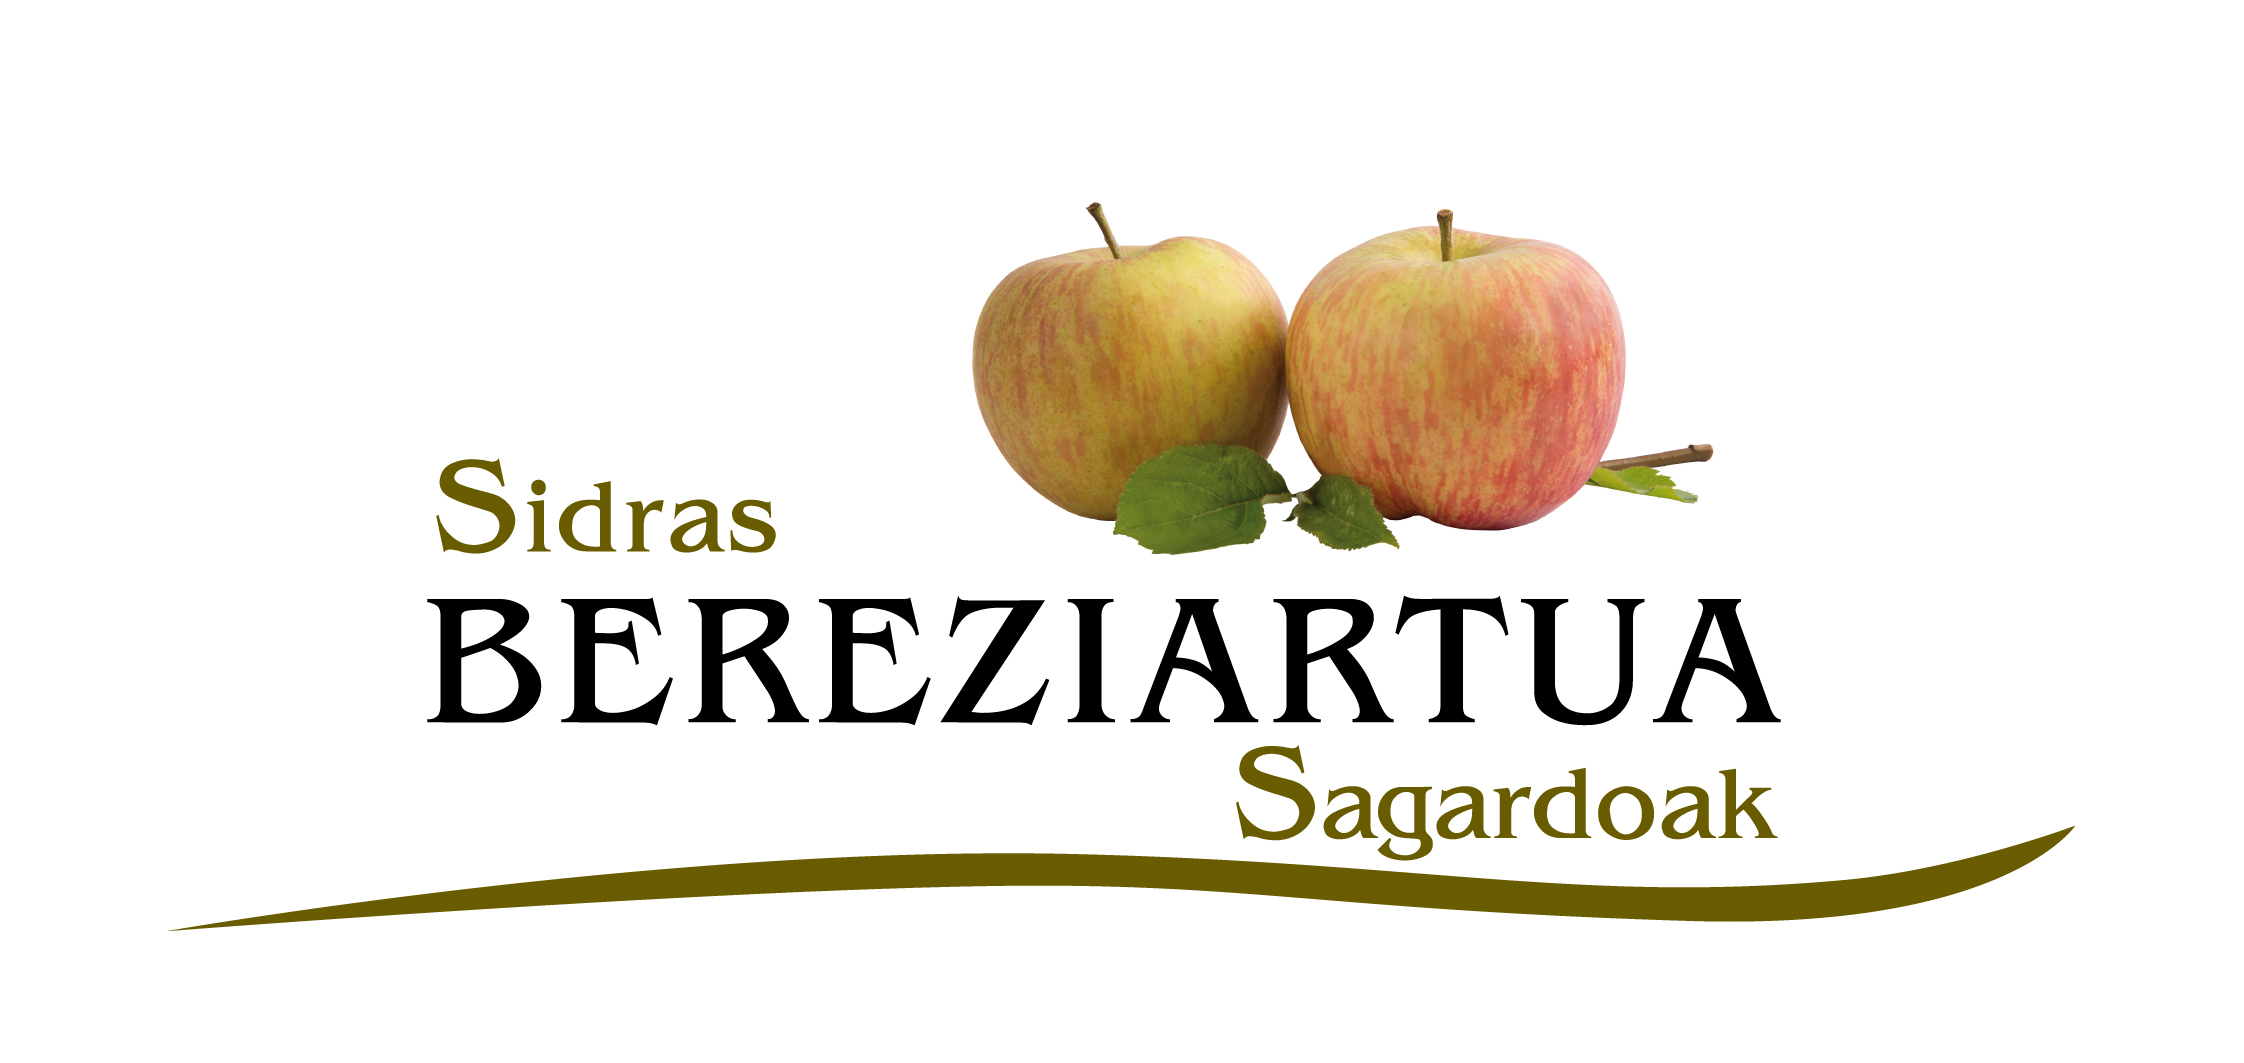 Sidrería Bereziartua, tradición, cultura e historia de la sidra vasca.